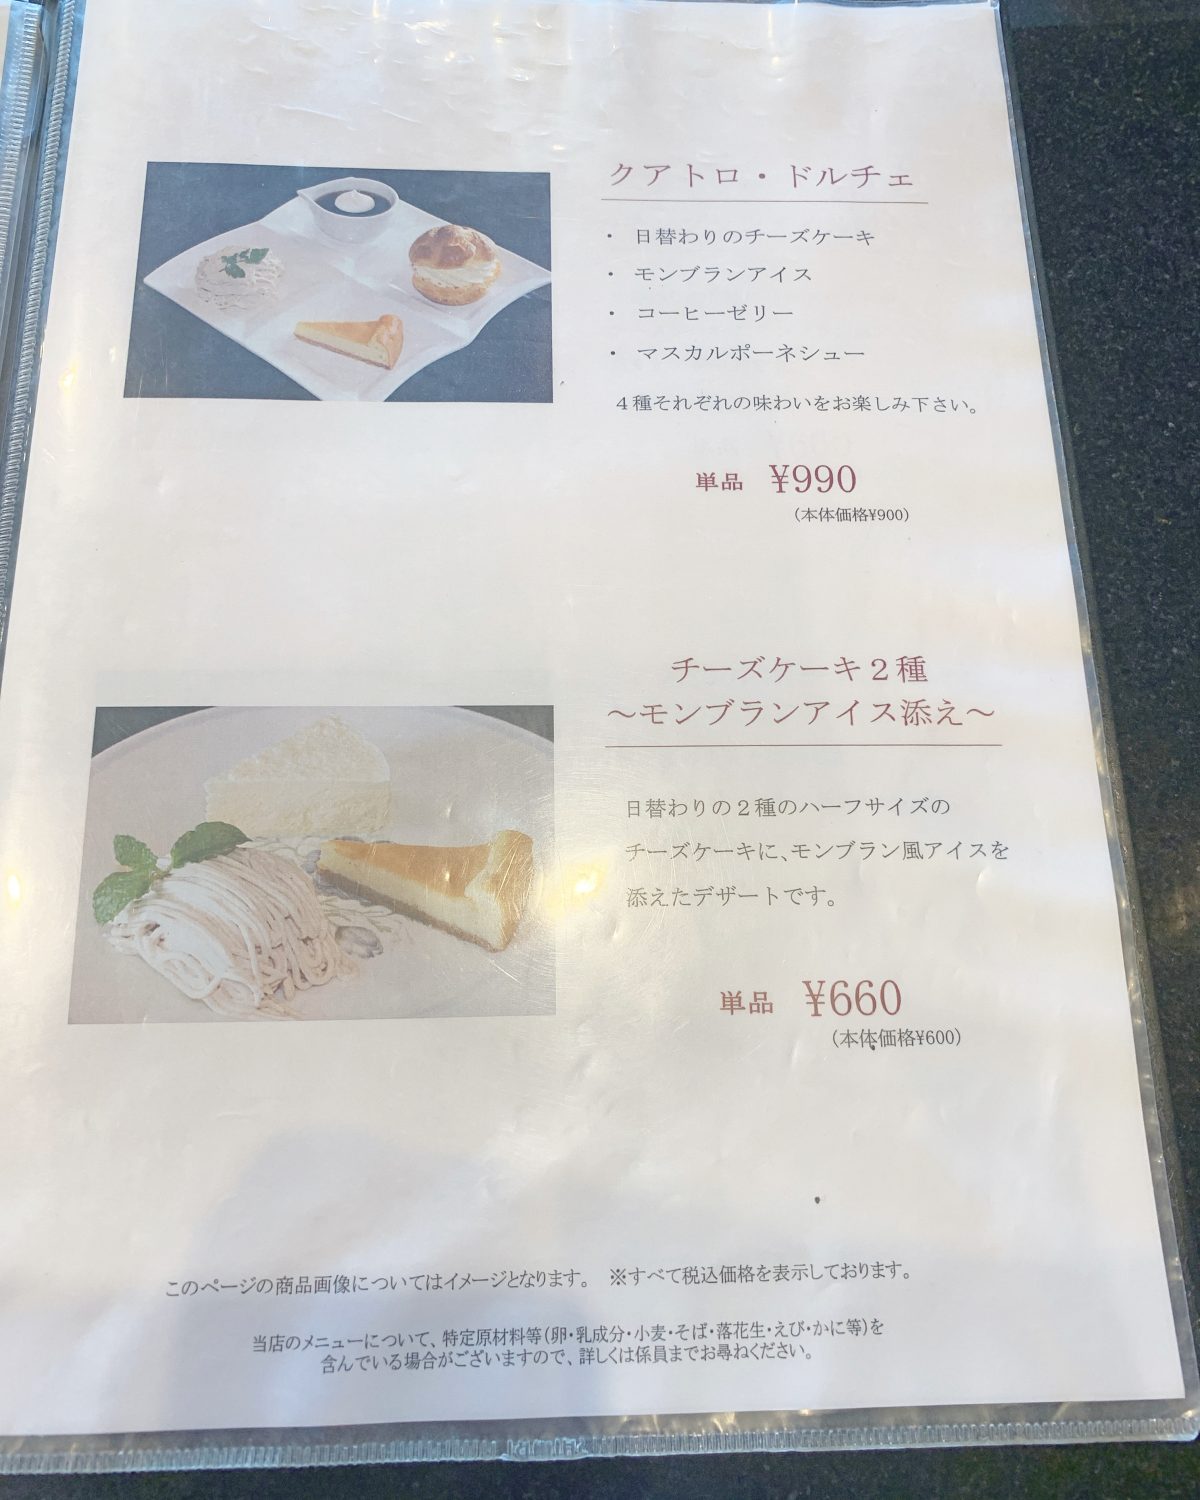 天王寺でチーズケーキを食べ比べできるカフェ店『FORMAあべのハルカス近鉄本店』